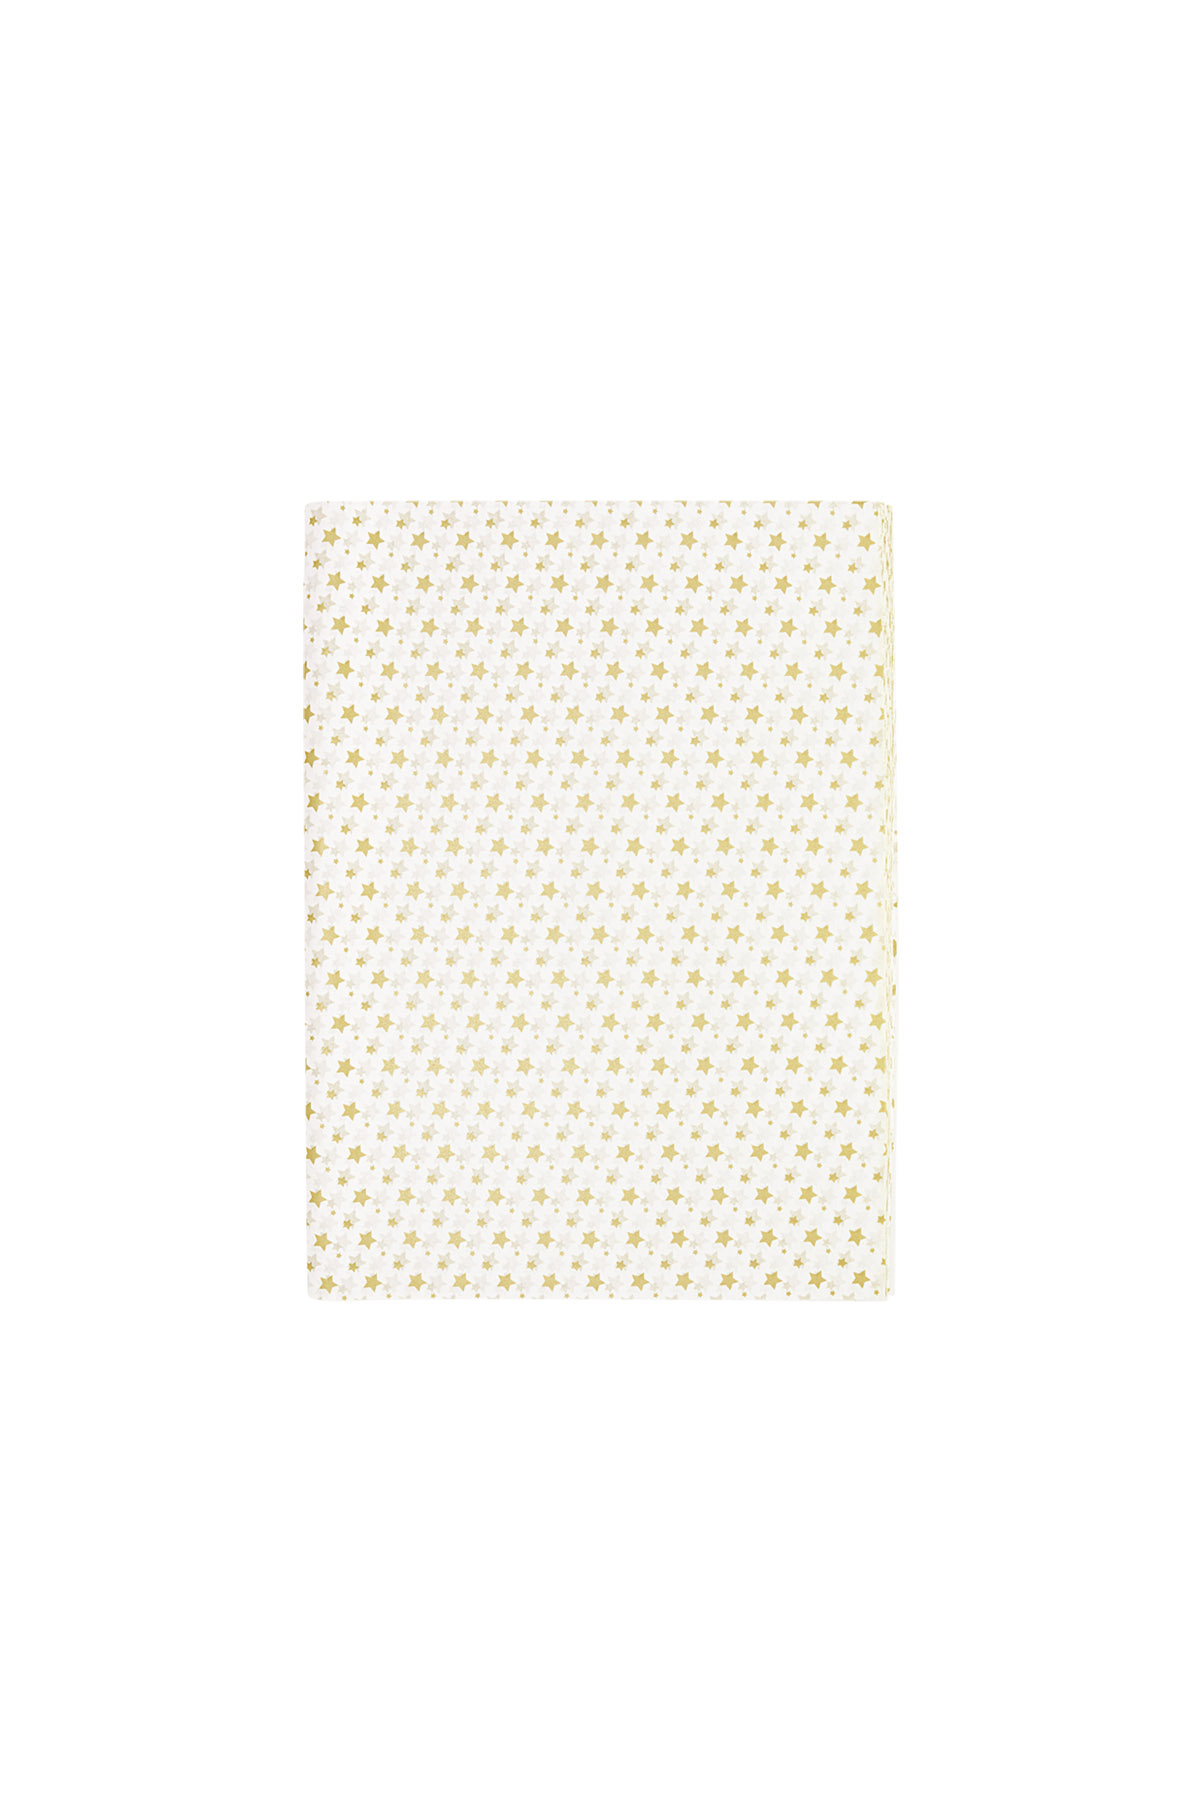 Estrellas de papel de seda - Papel blanco/dorado